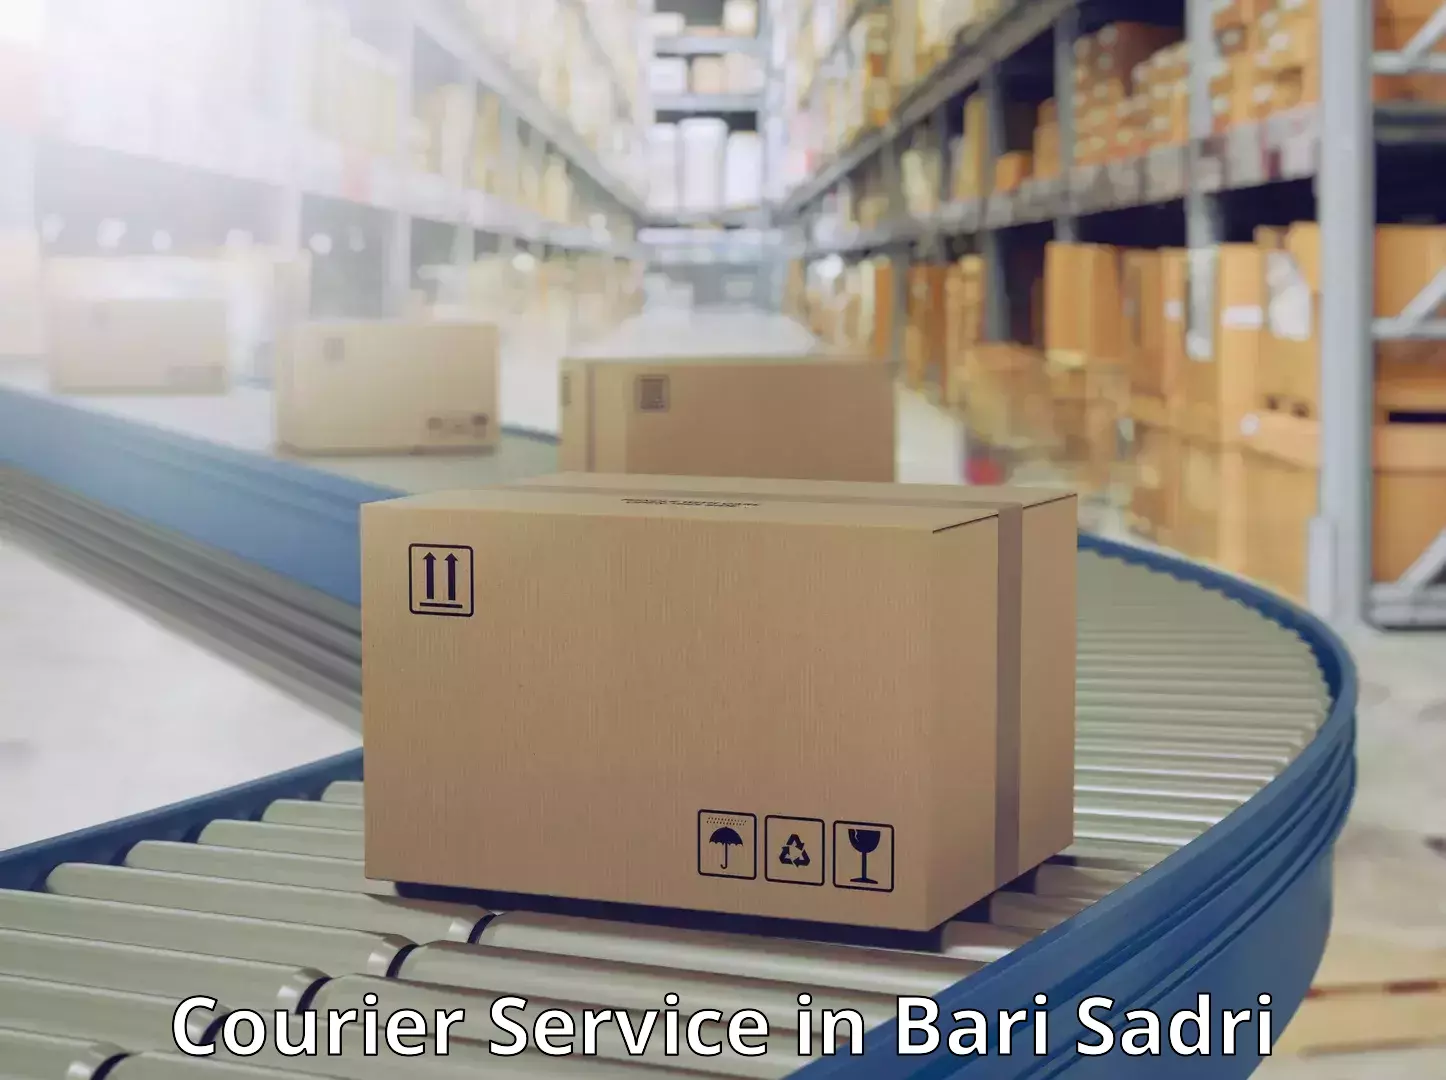 Courier rate comparison in Bari Sadri